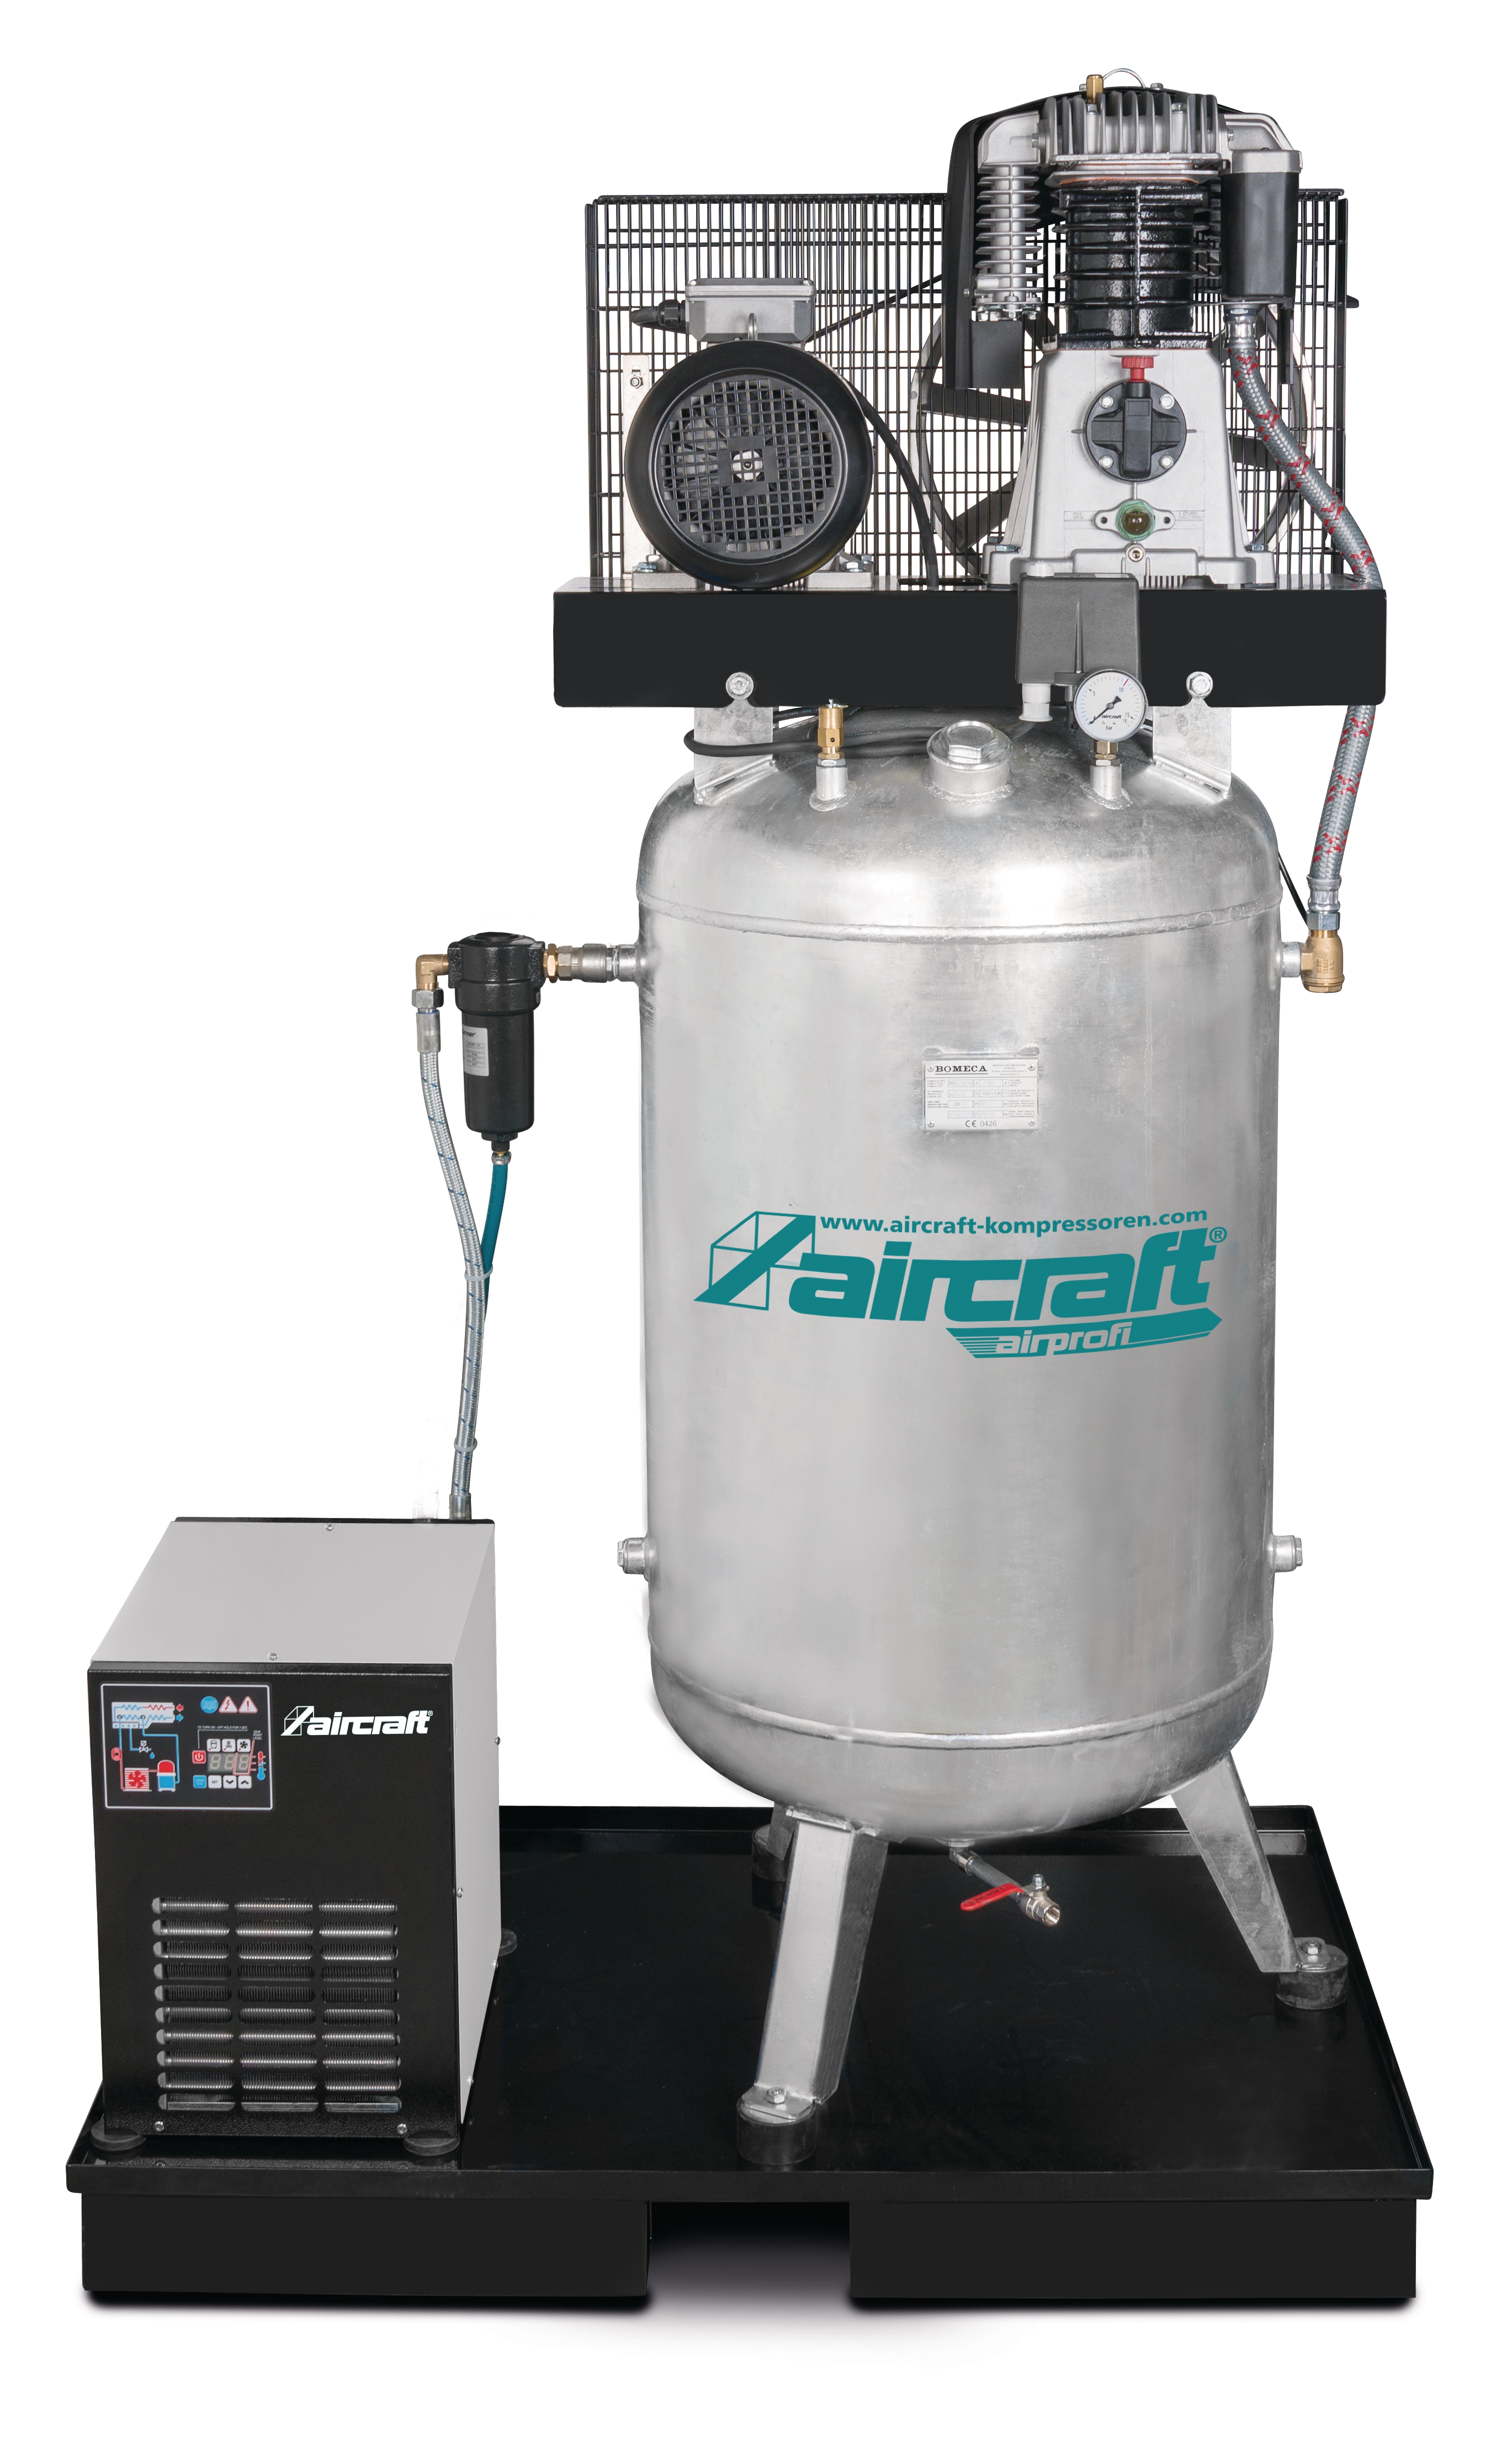 AIRCRAFT Kompressor AIRPROFI 853/270/10 VK AD 2000 mit Kältetrockner u. Filter